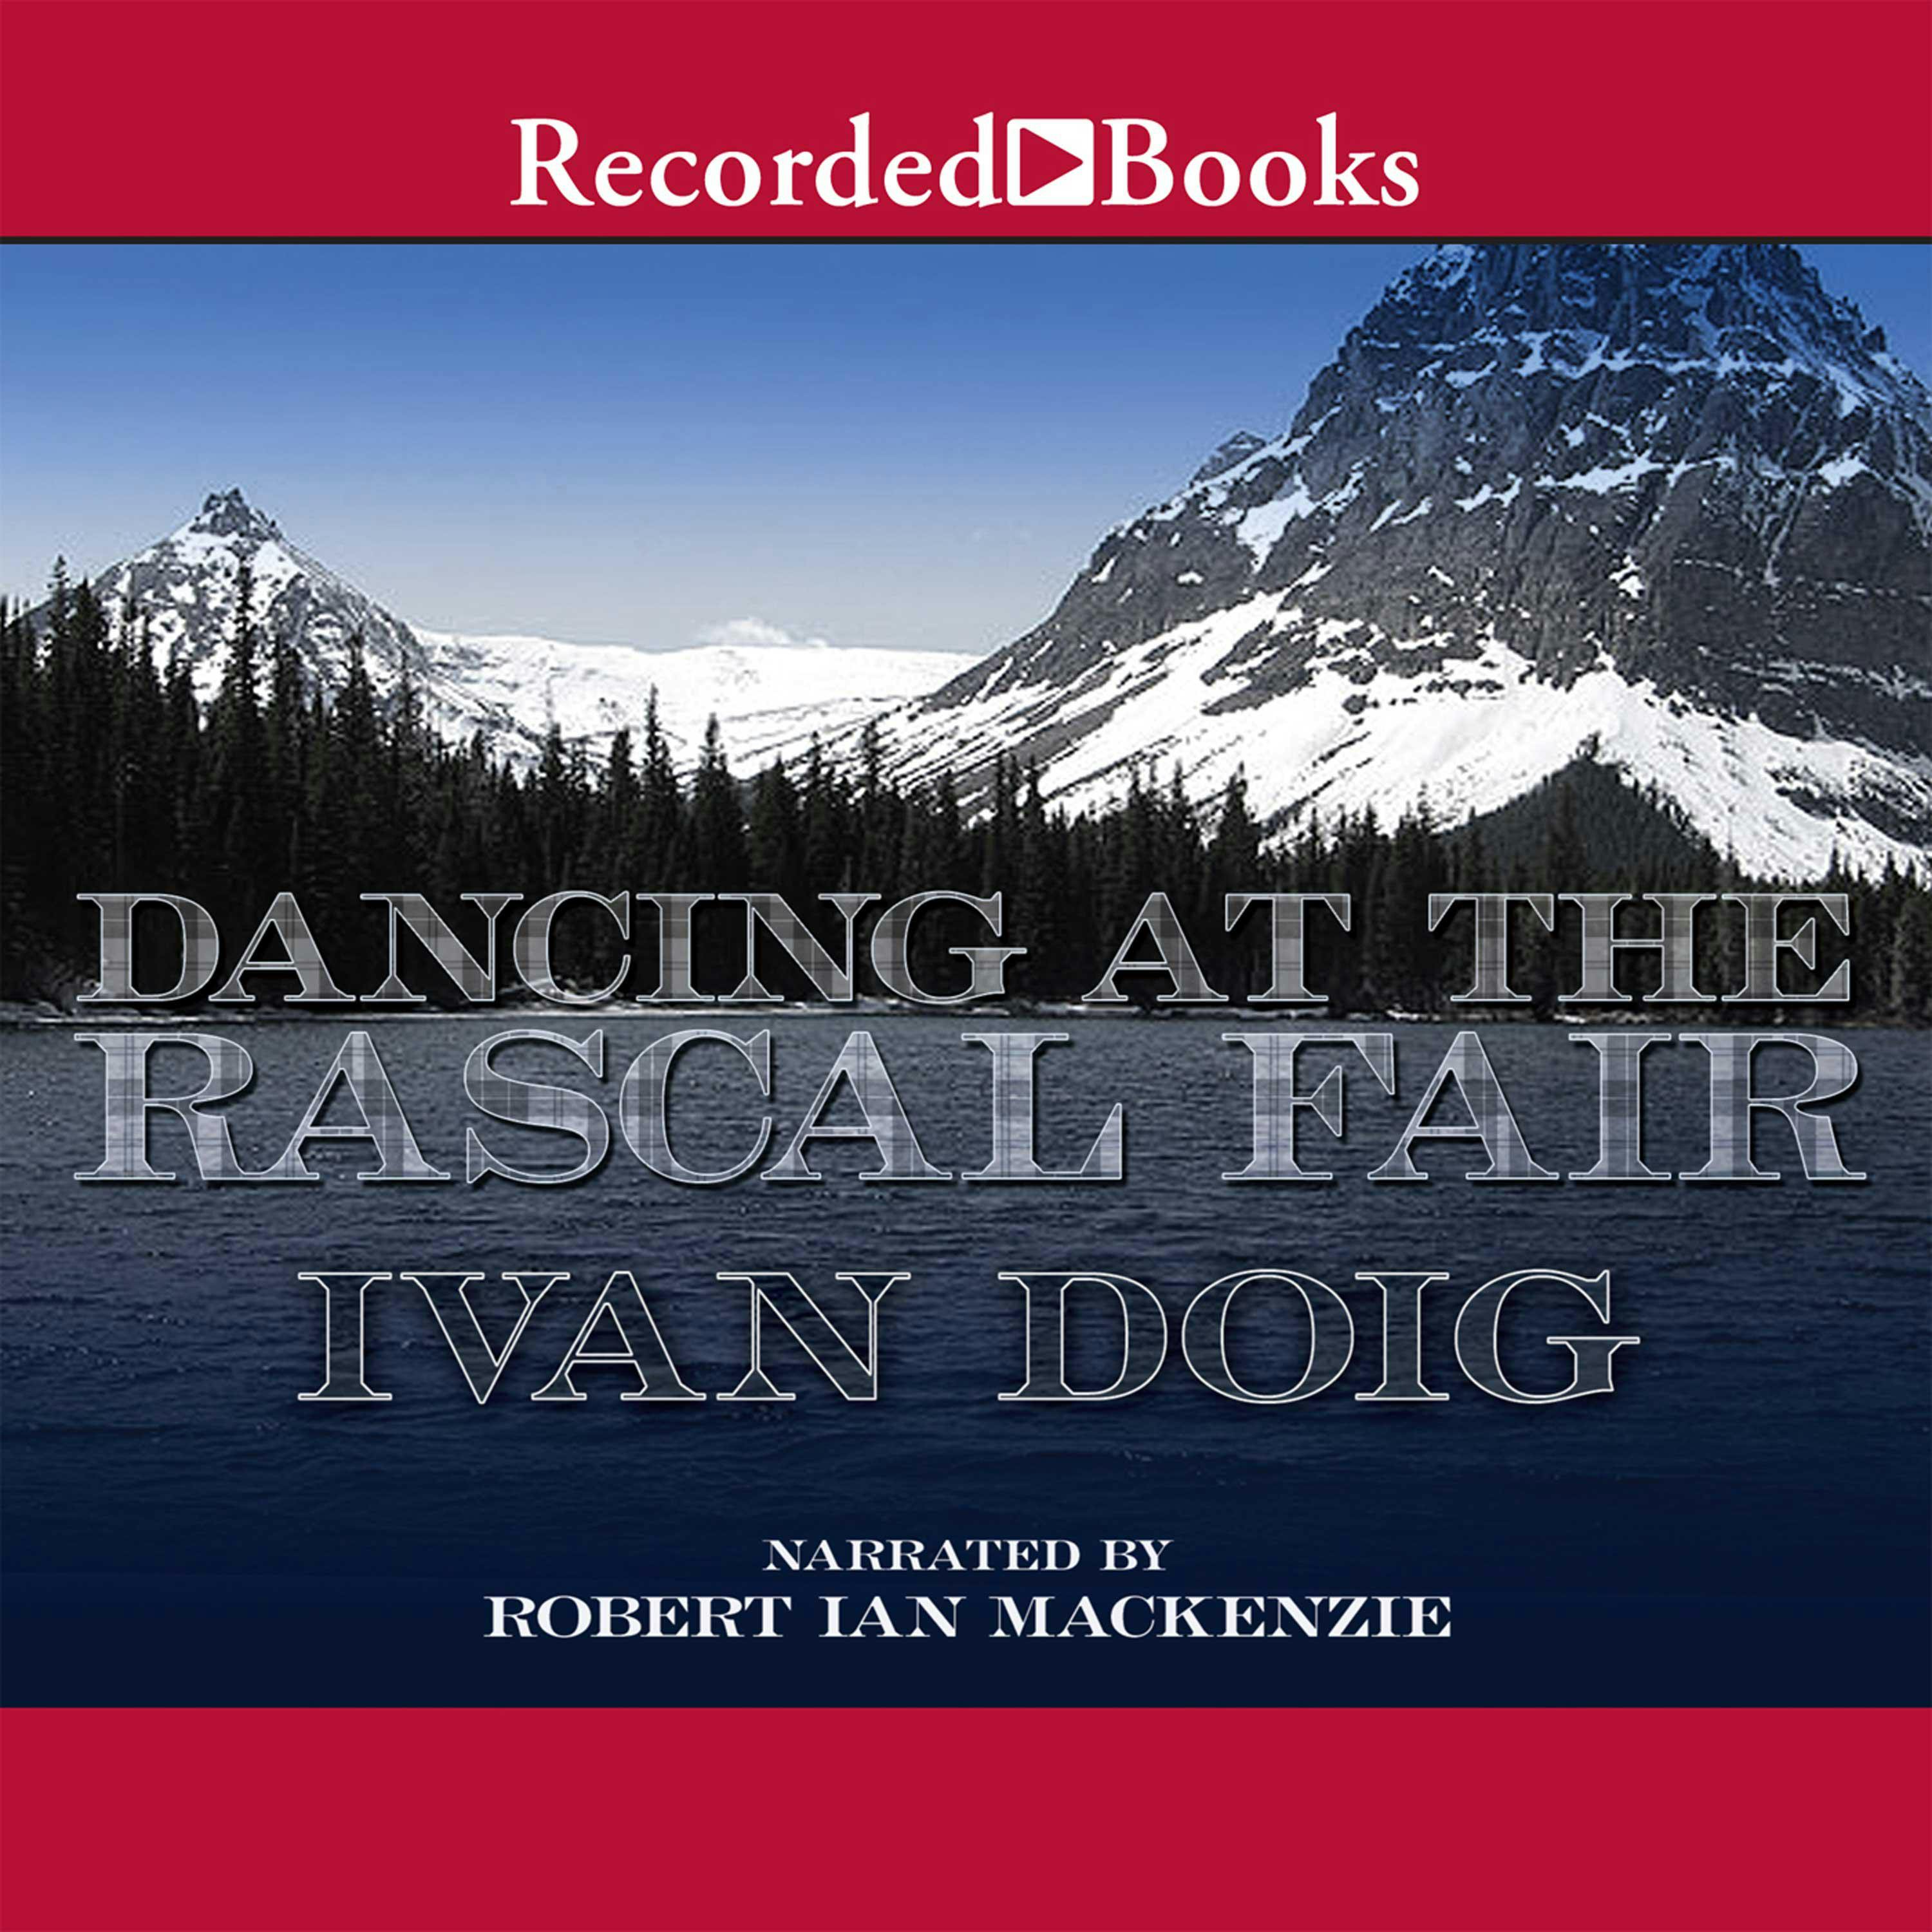 Dancing at the Rascal Fair - Ivan Doig